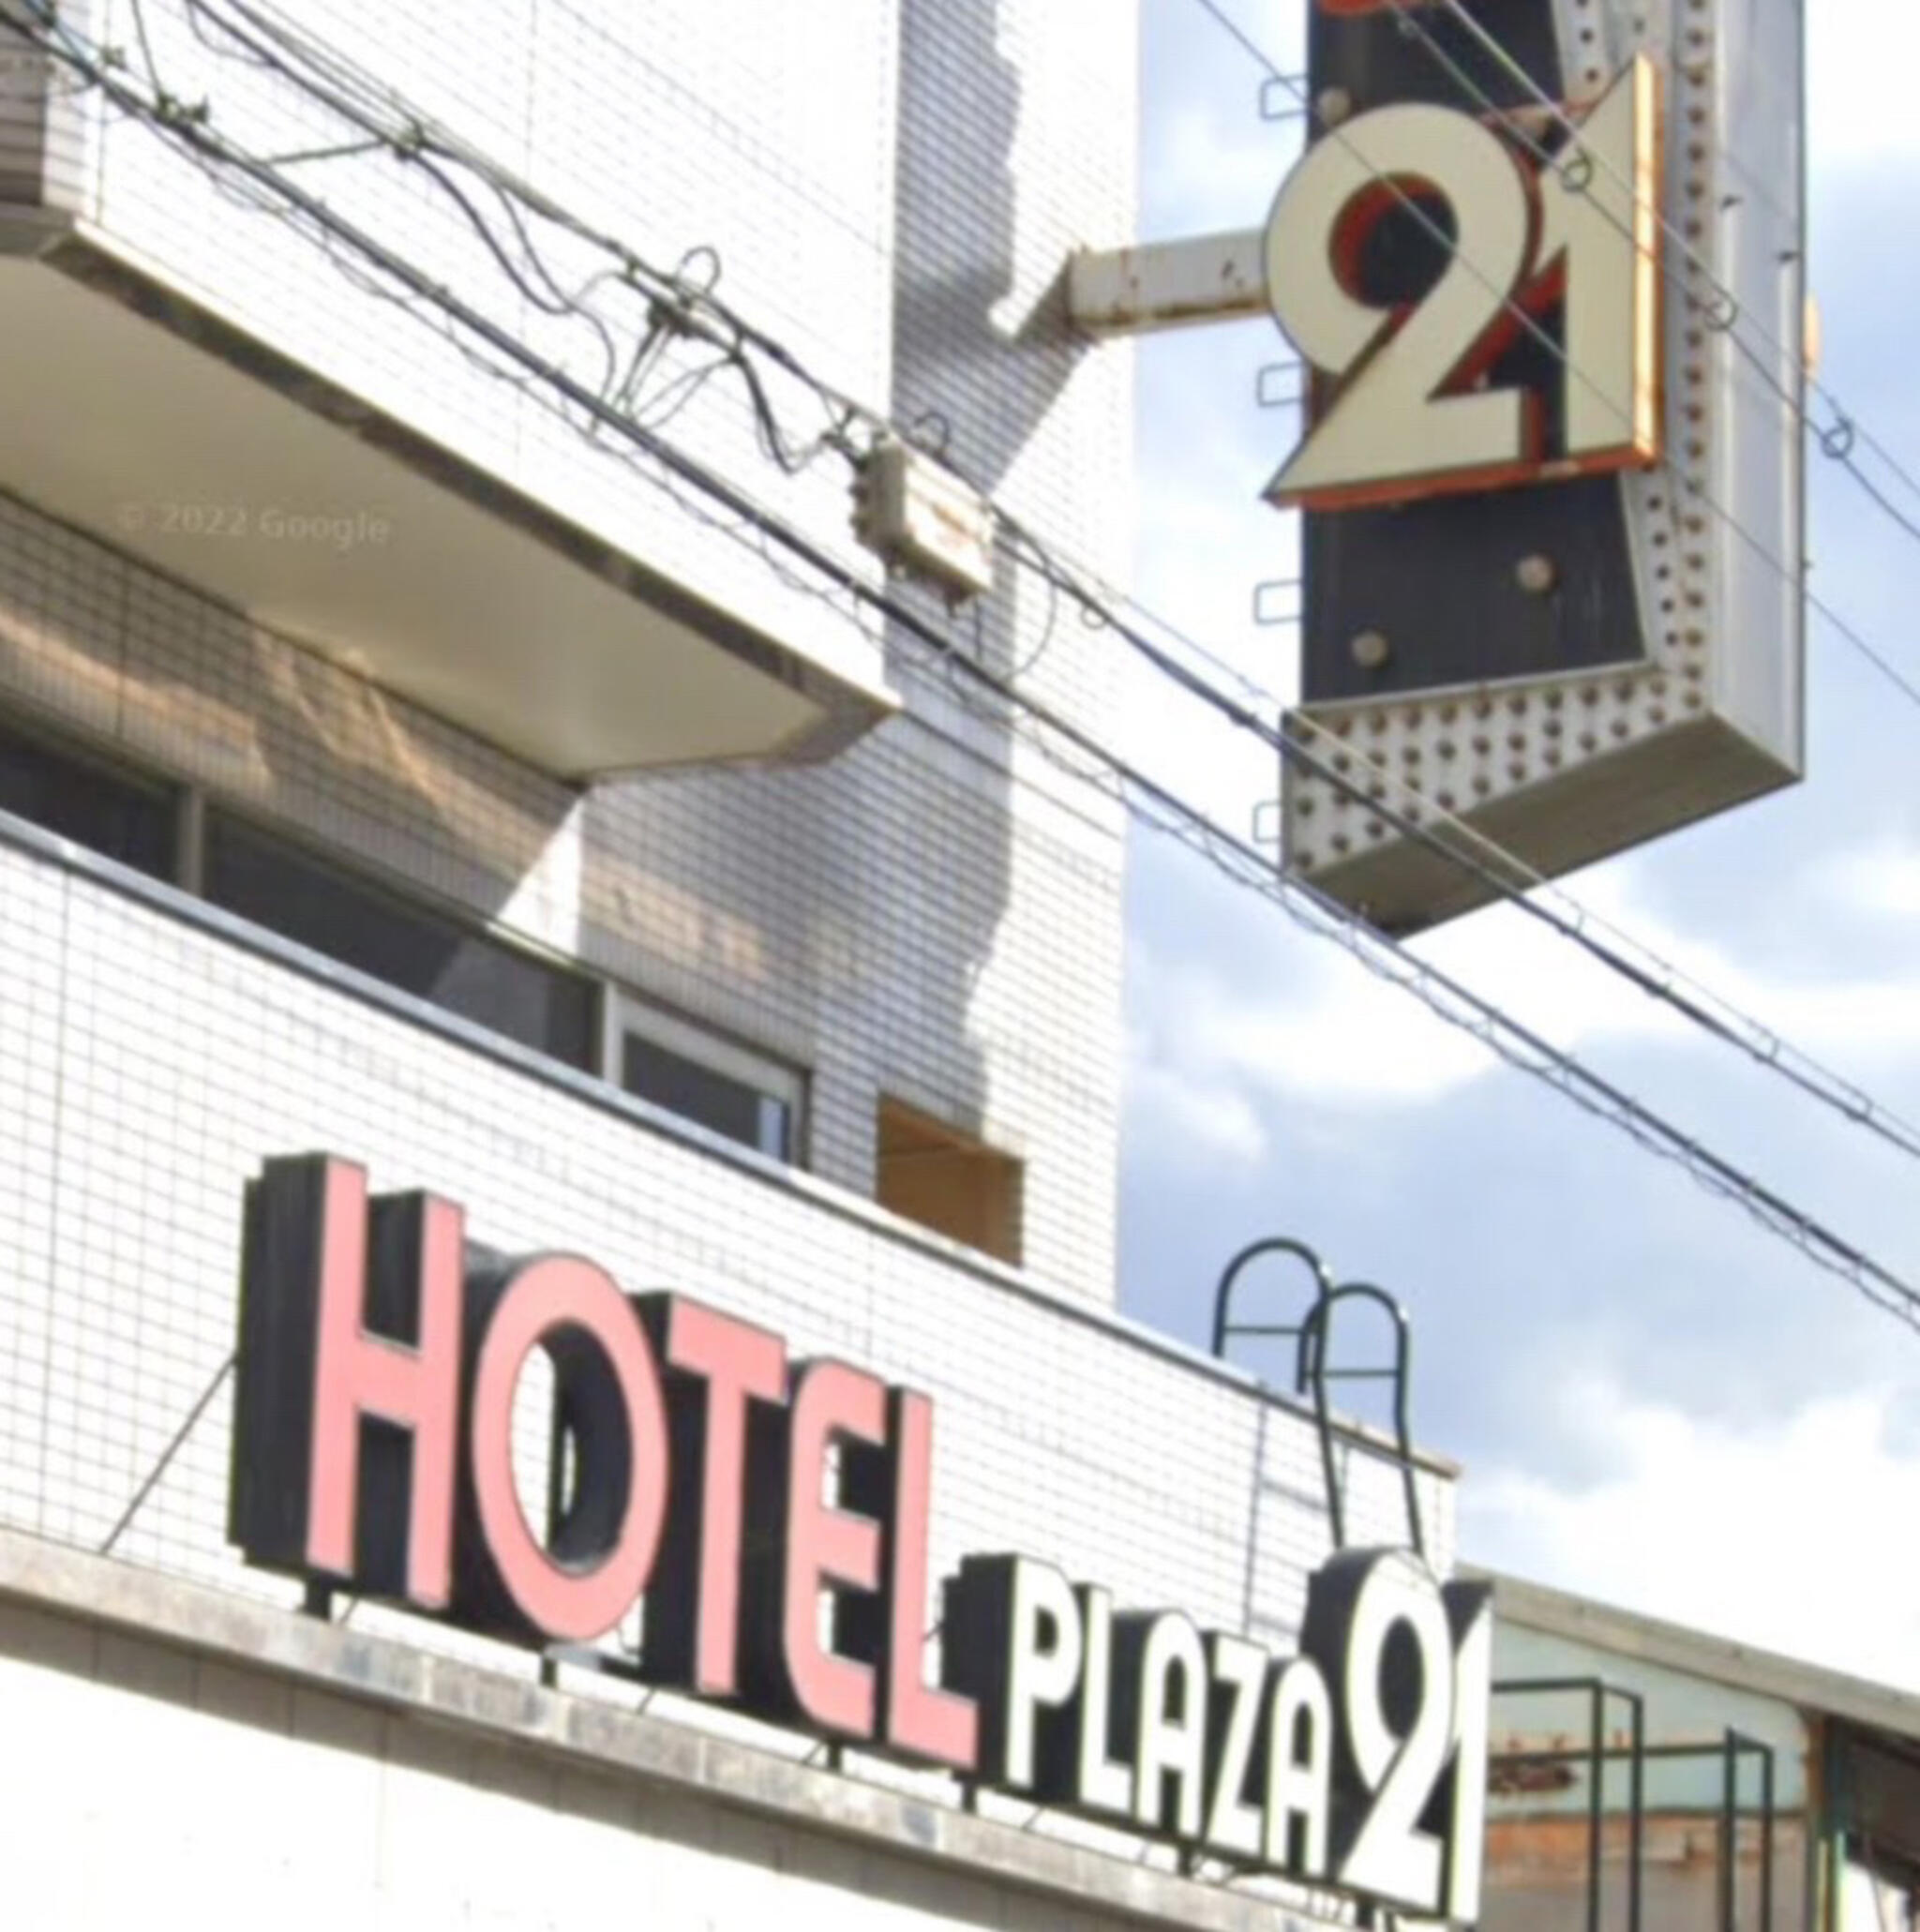 ビジネスイン・ホテルプラザ21 大阪 京橋の代表写真3